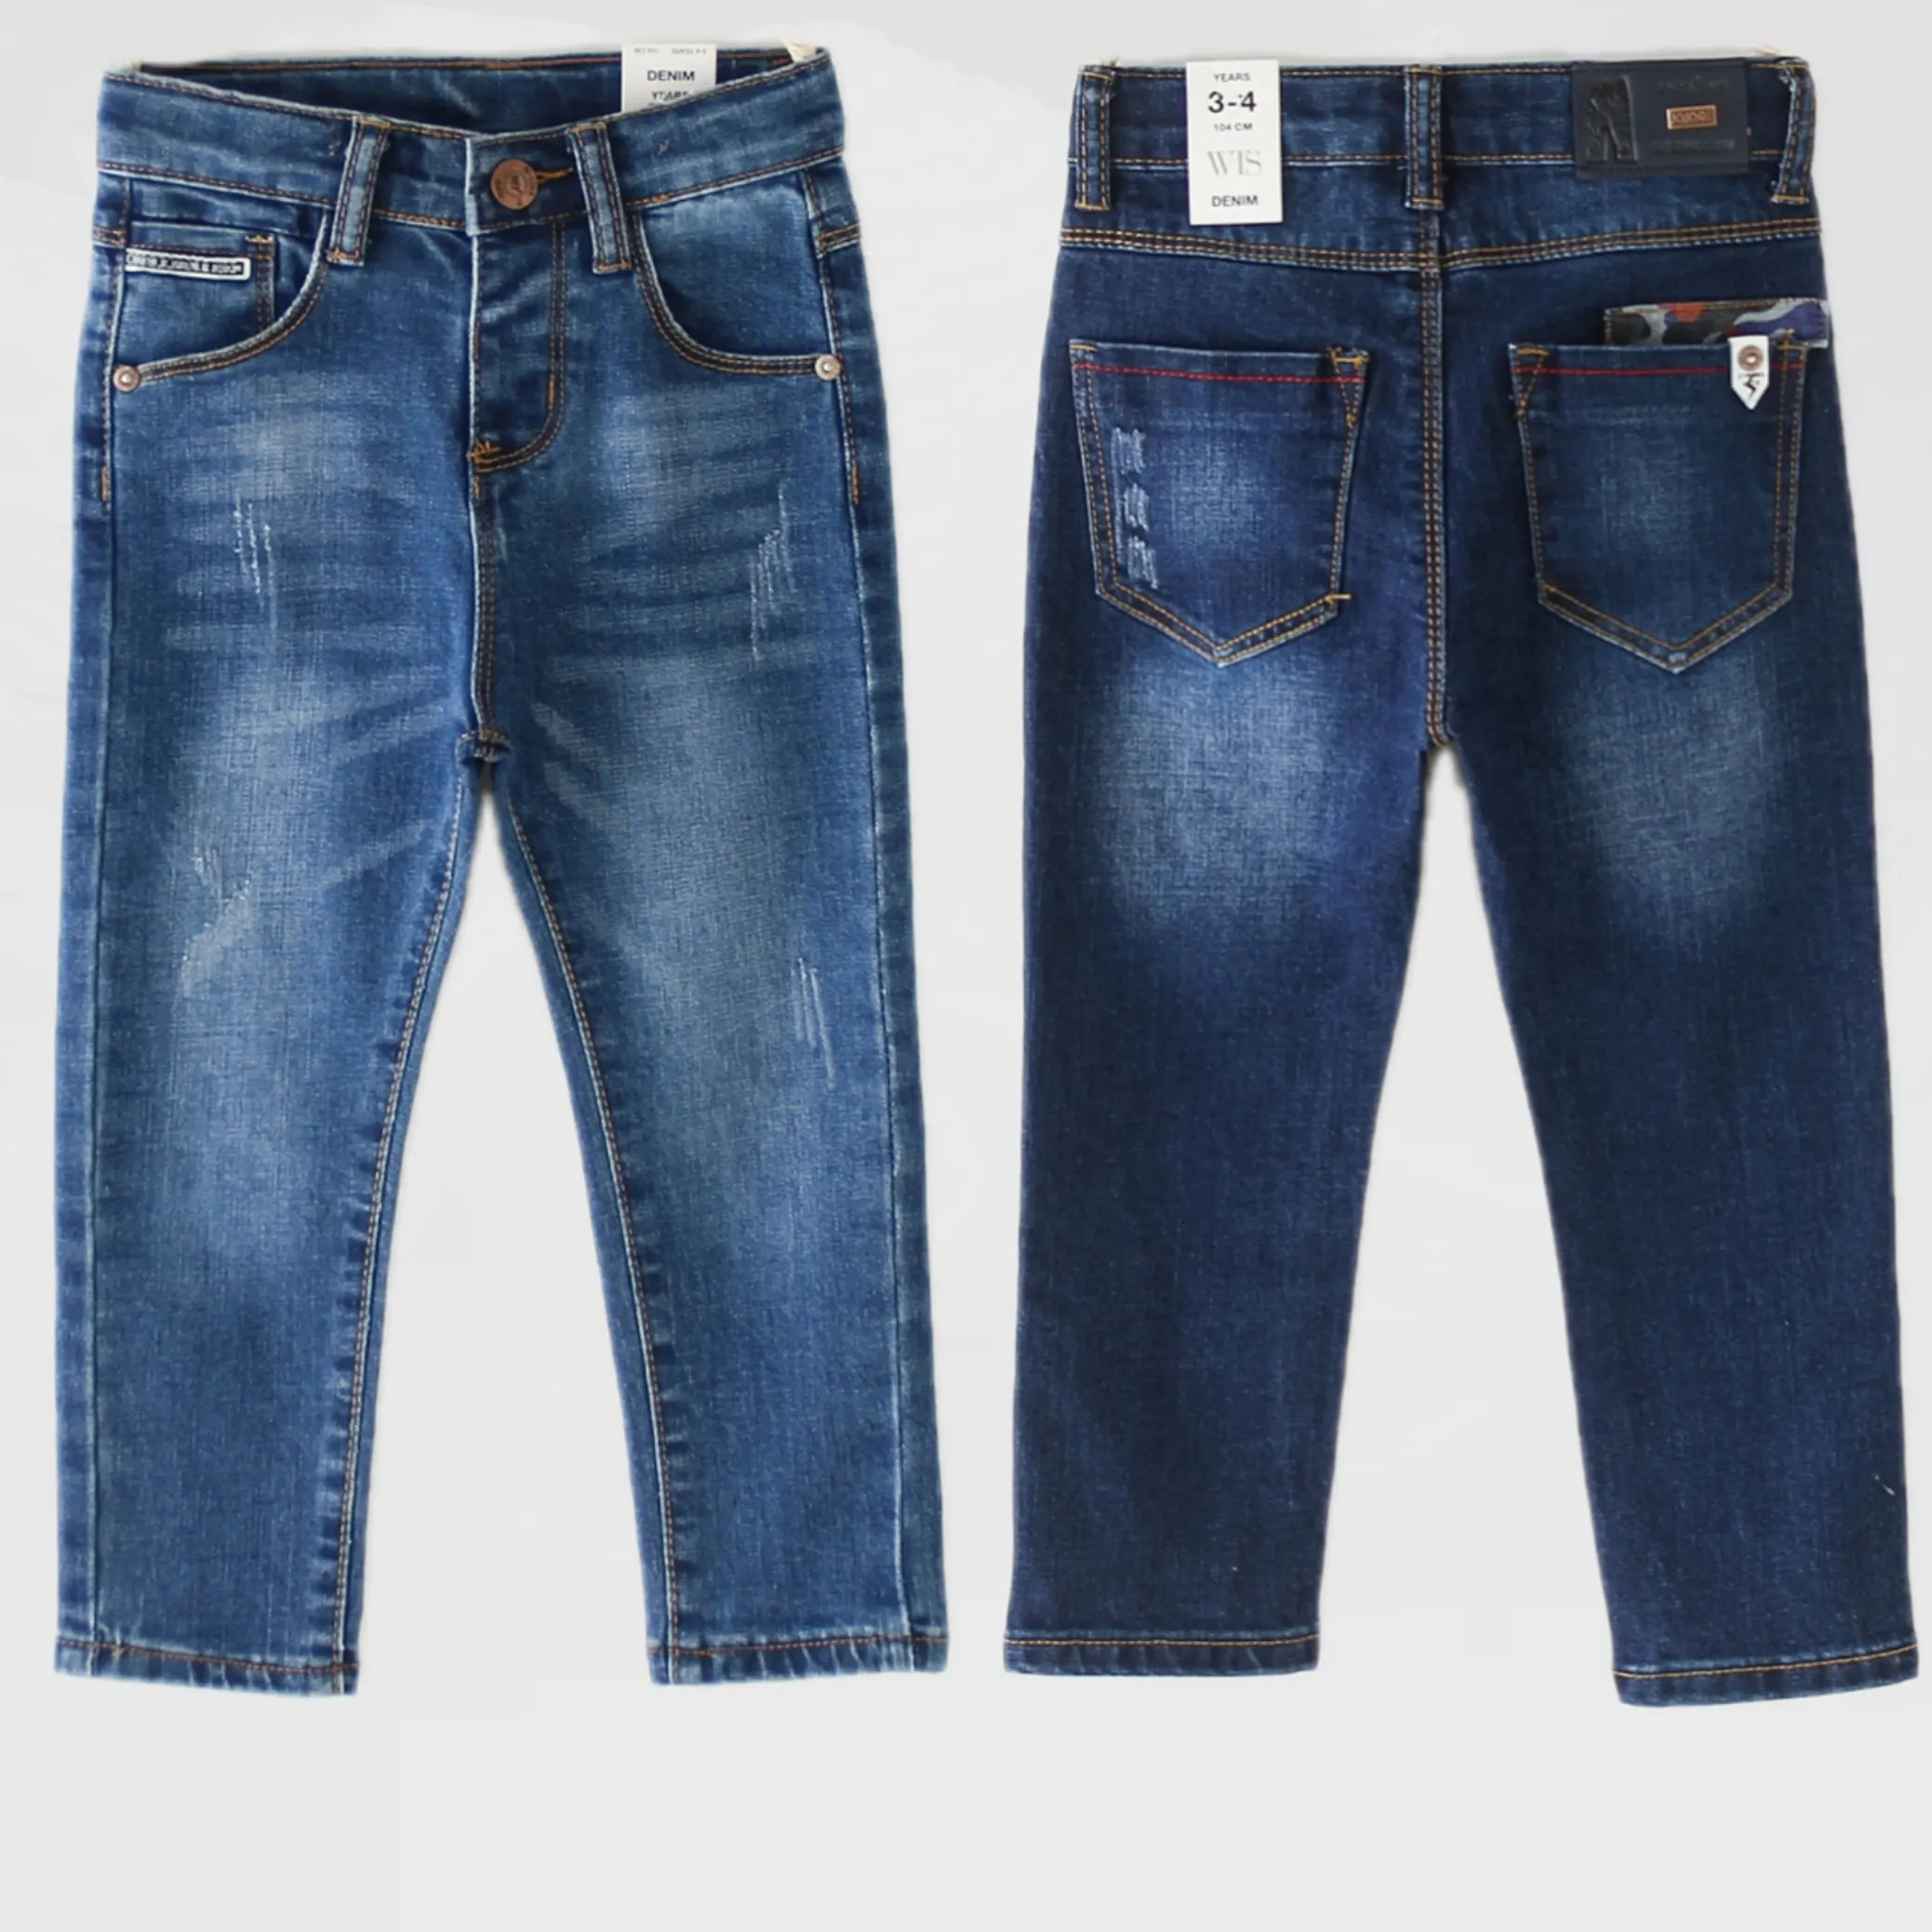 2 -10 T wholesale Casual Retro Children Baby Overalls Wear Kids Boys Blue Jeans Denim Pants